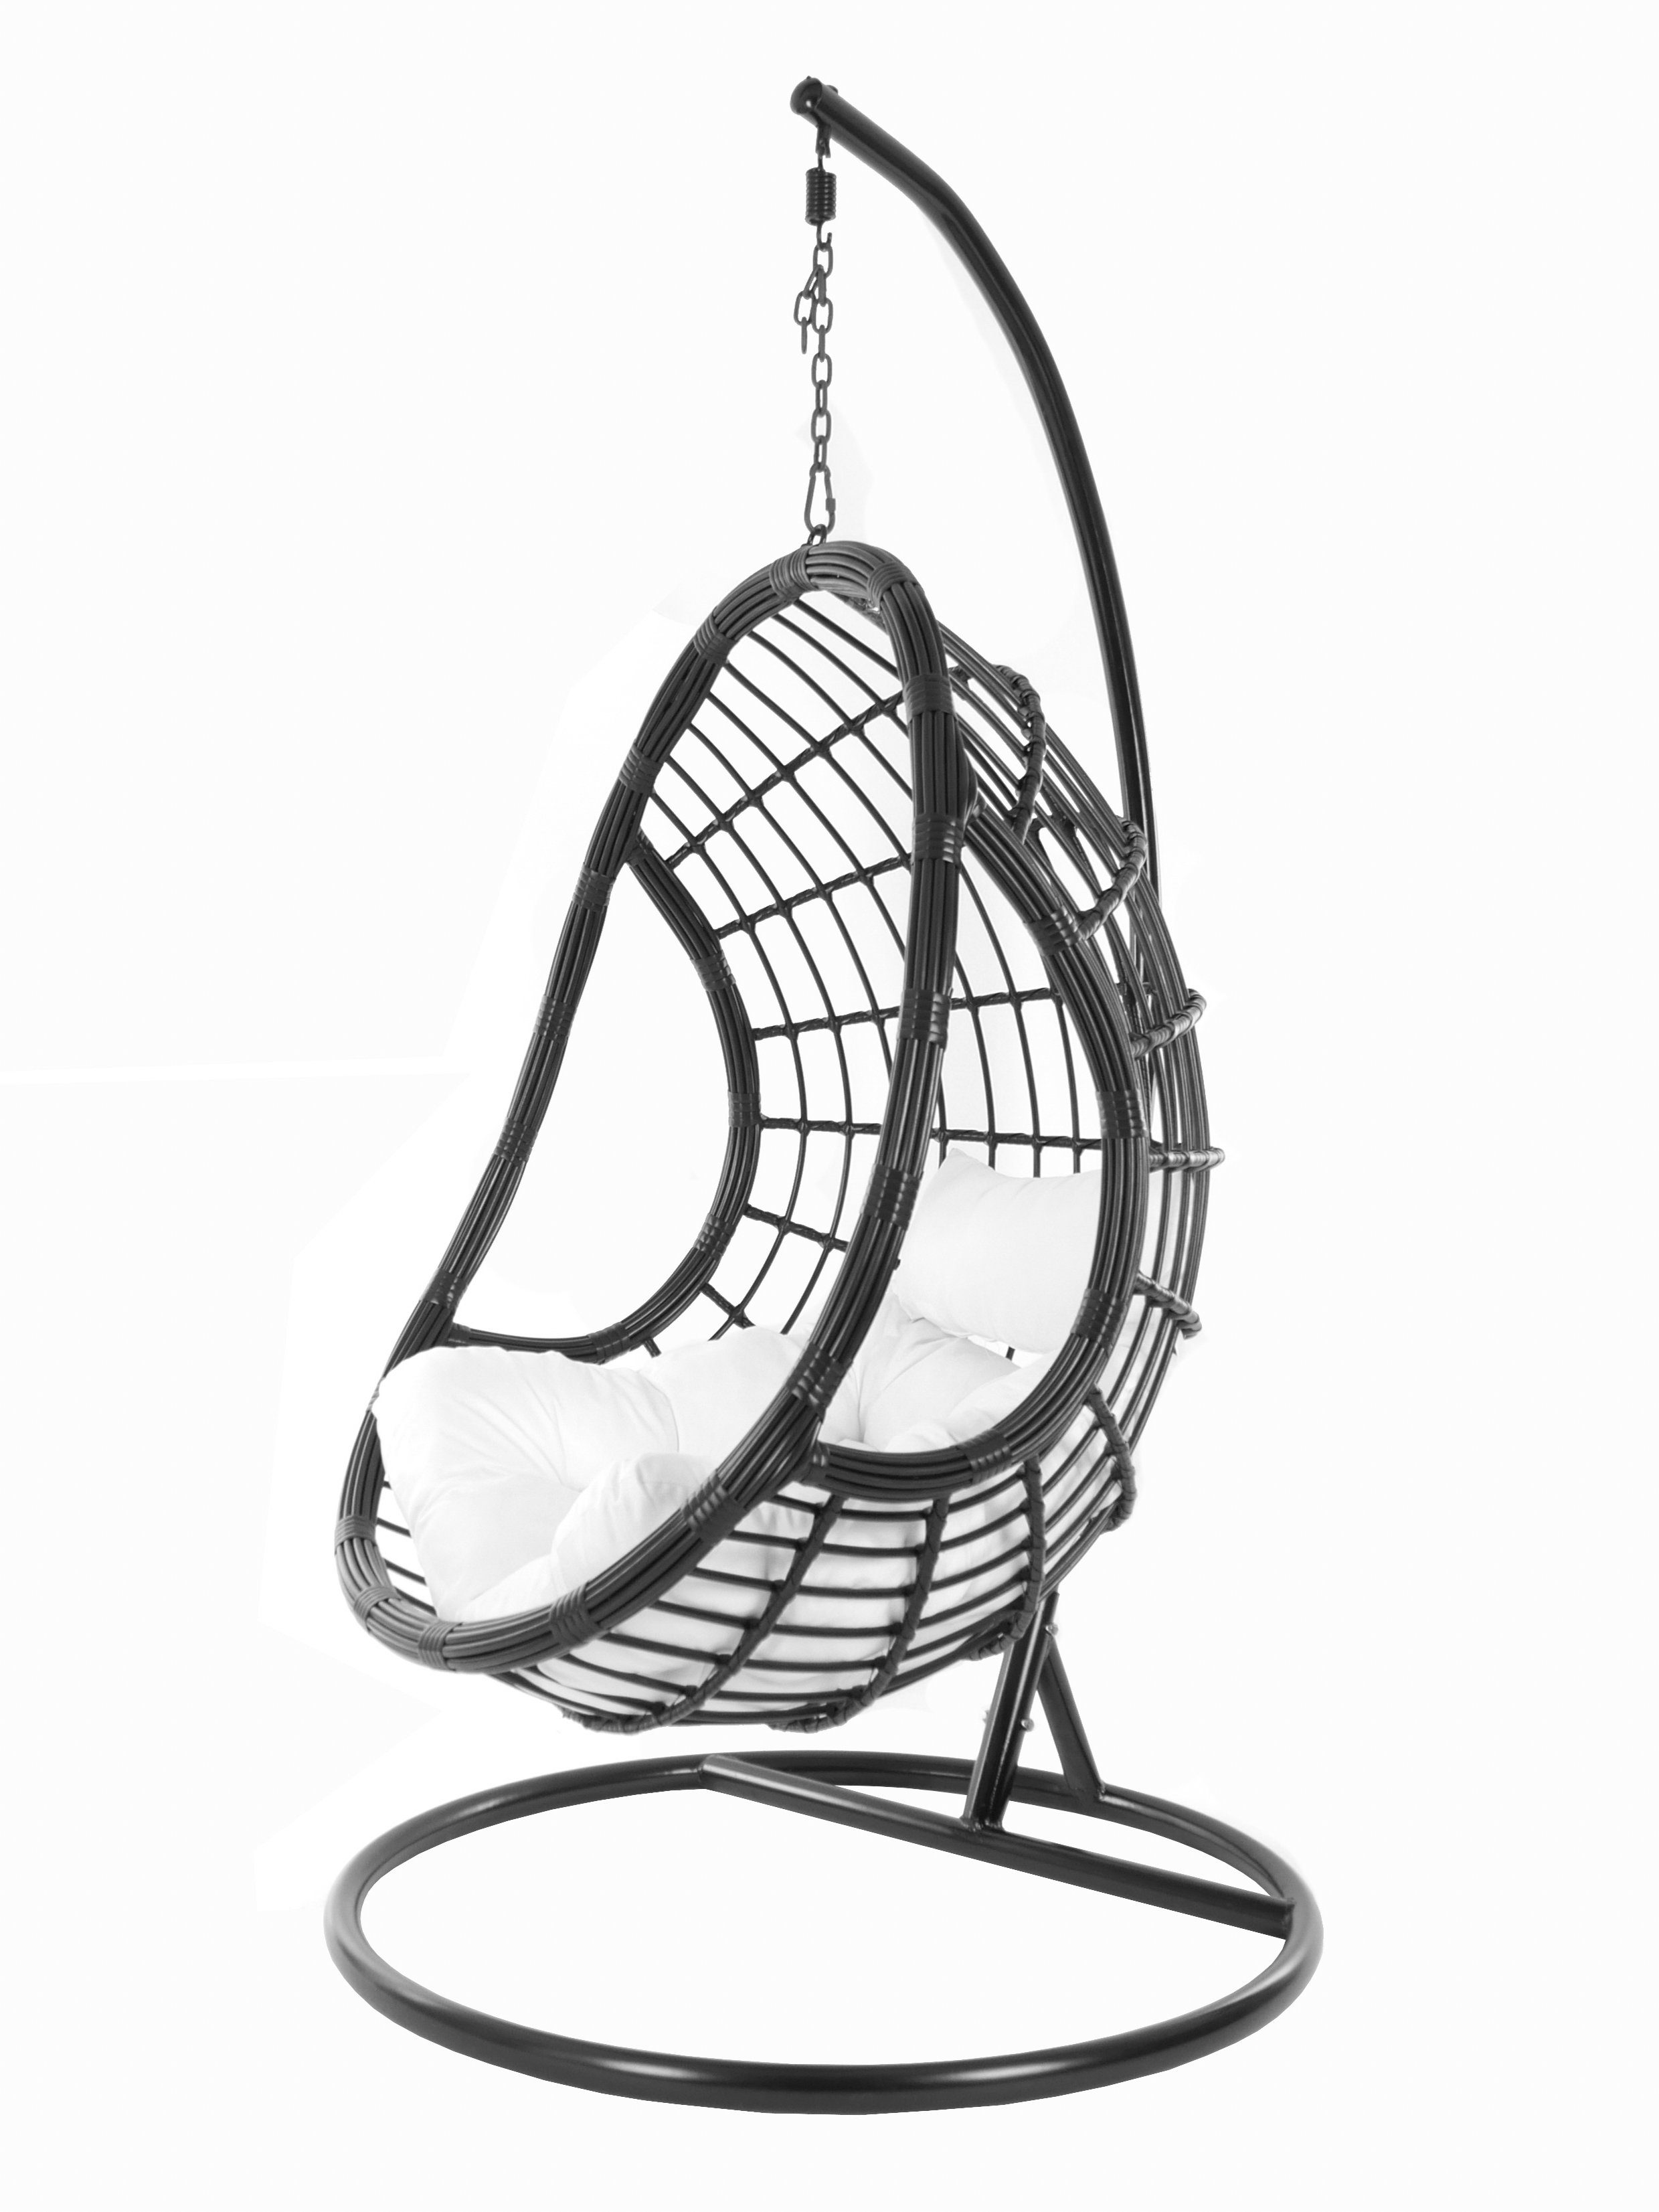 KIDEO Hängesessel PALMANOVA black, Swing Chair, schwarz, Loungemöbel, Hängesessel mit Gestell und Kissen, Schwebesessel, edles Design weiß (1000 snow) | Hängesessel